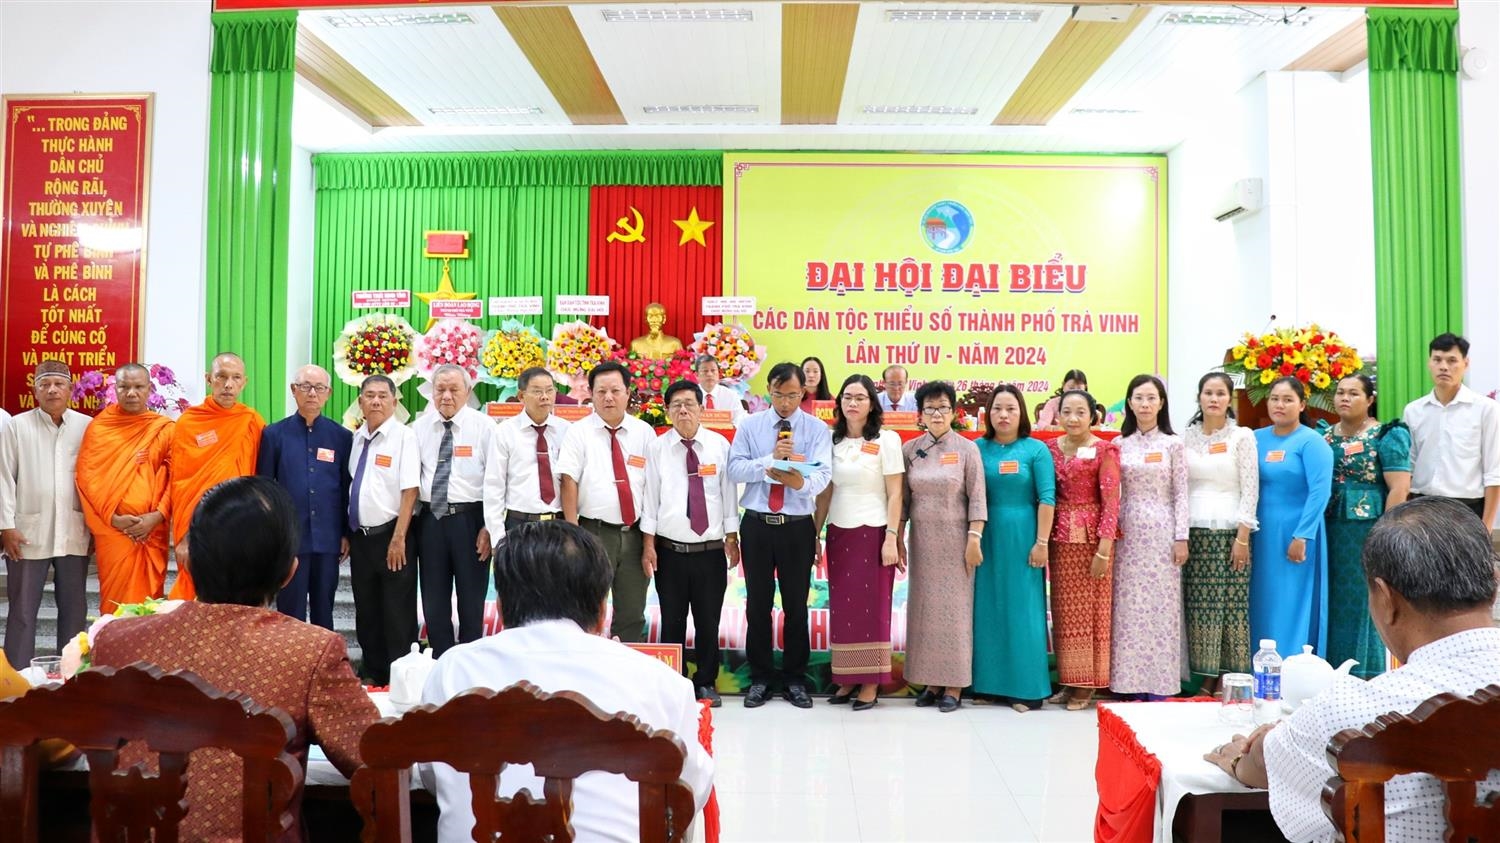 Các đại biểu được bầu đi dự Đại hội Đại biểu các DTTS tỉnh Trà Vinh